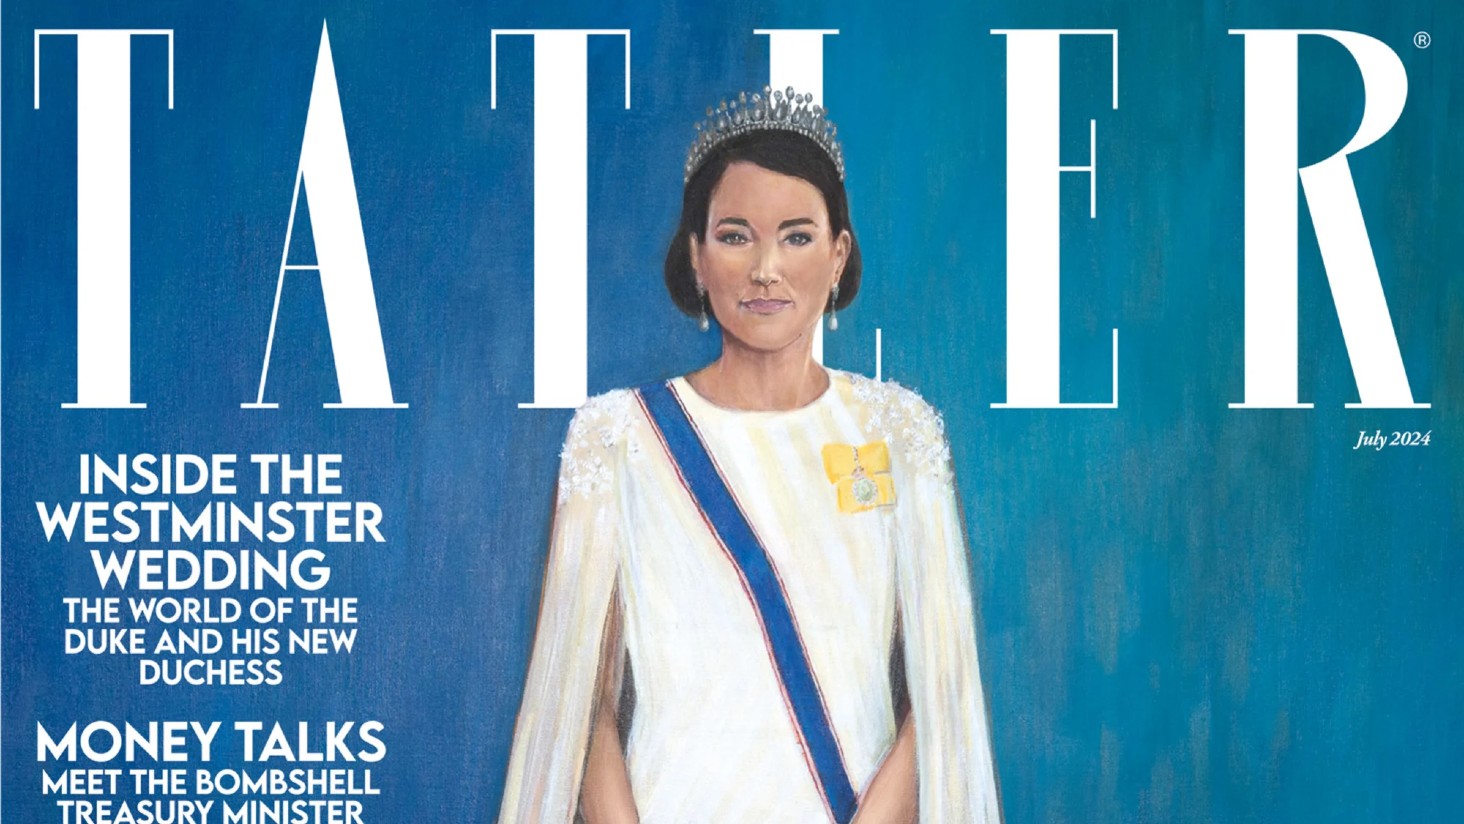 Kontrowersje wywołało także zdjęcie Kate, księżnej Walii